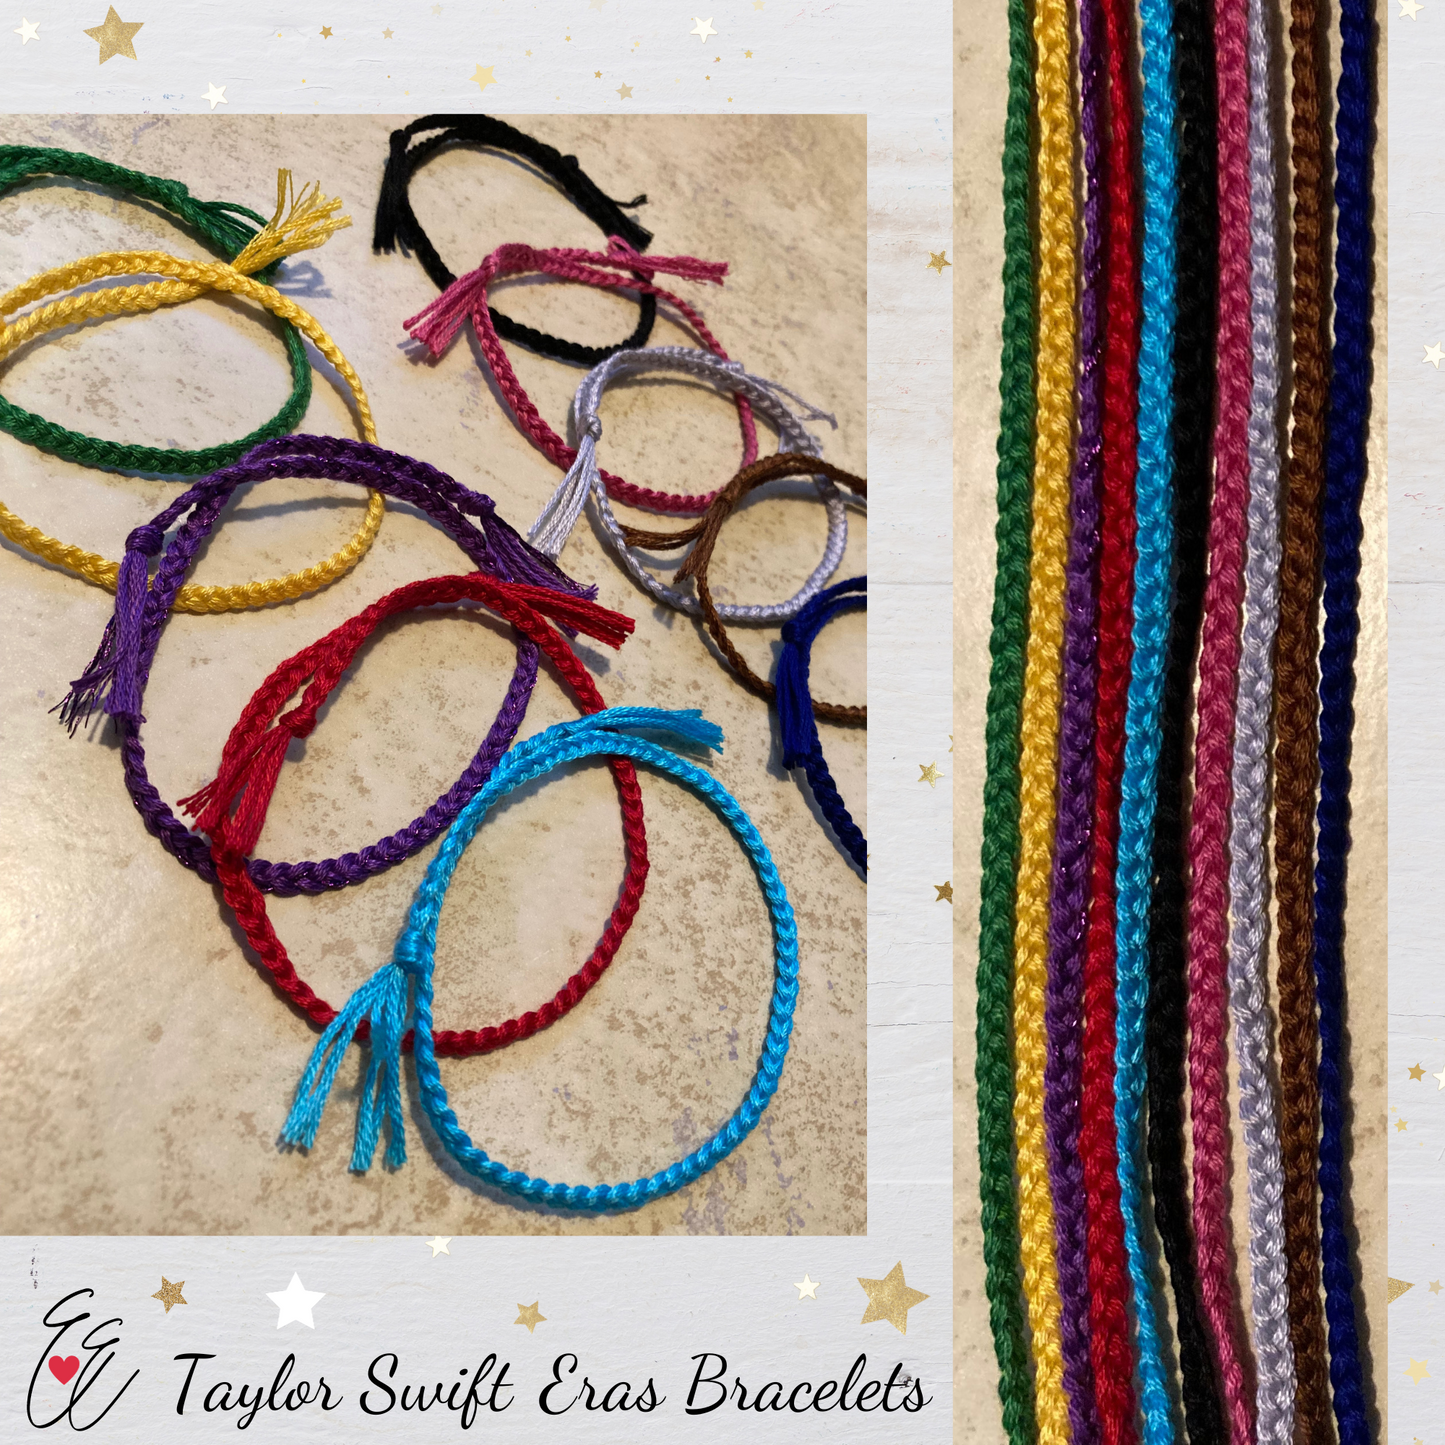 Taylor Swift Eras Inspired Thread Braided Friendship Bracelets